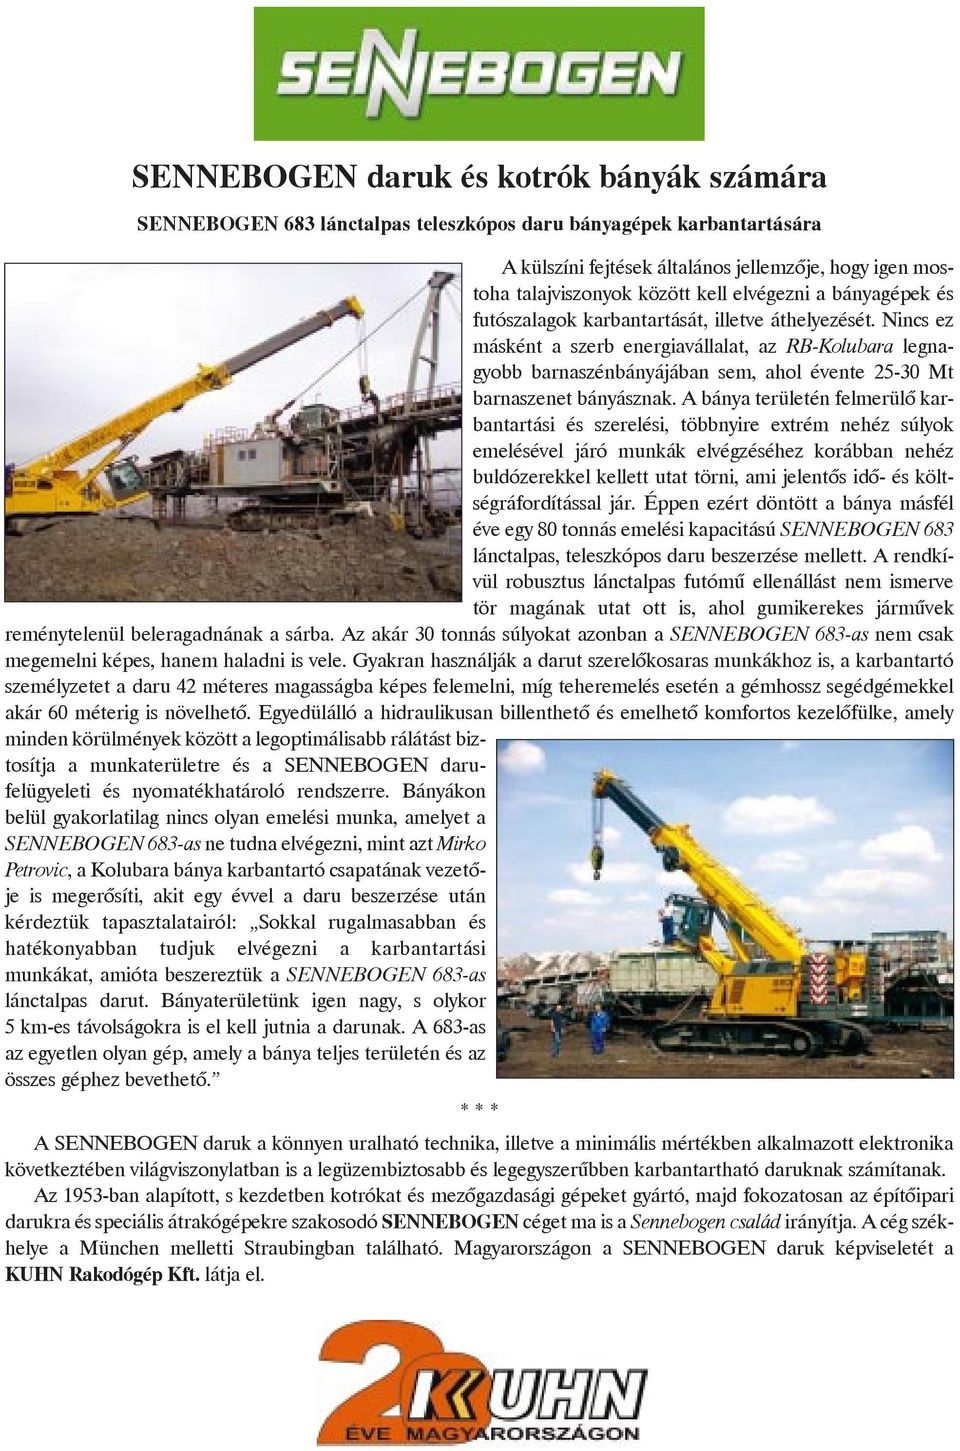 Nincs ez másként a szerb energiavállalat, az RB-Kolubara legnagyobb barnaszénbányájában sem, ahol évente 25-30 Mt barnaszenet bányásznak.